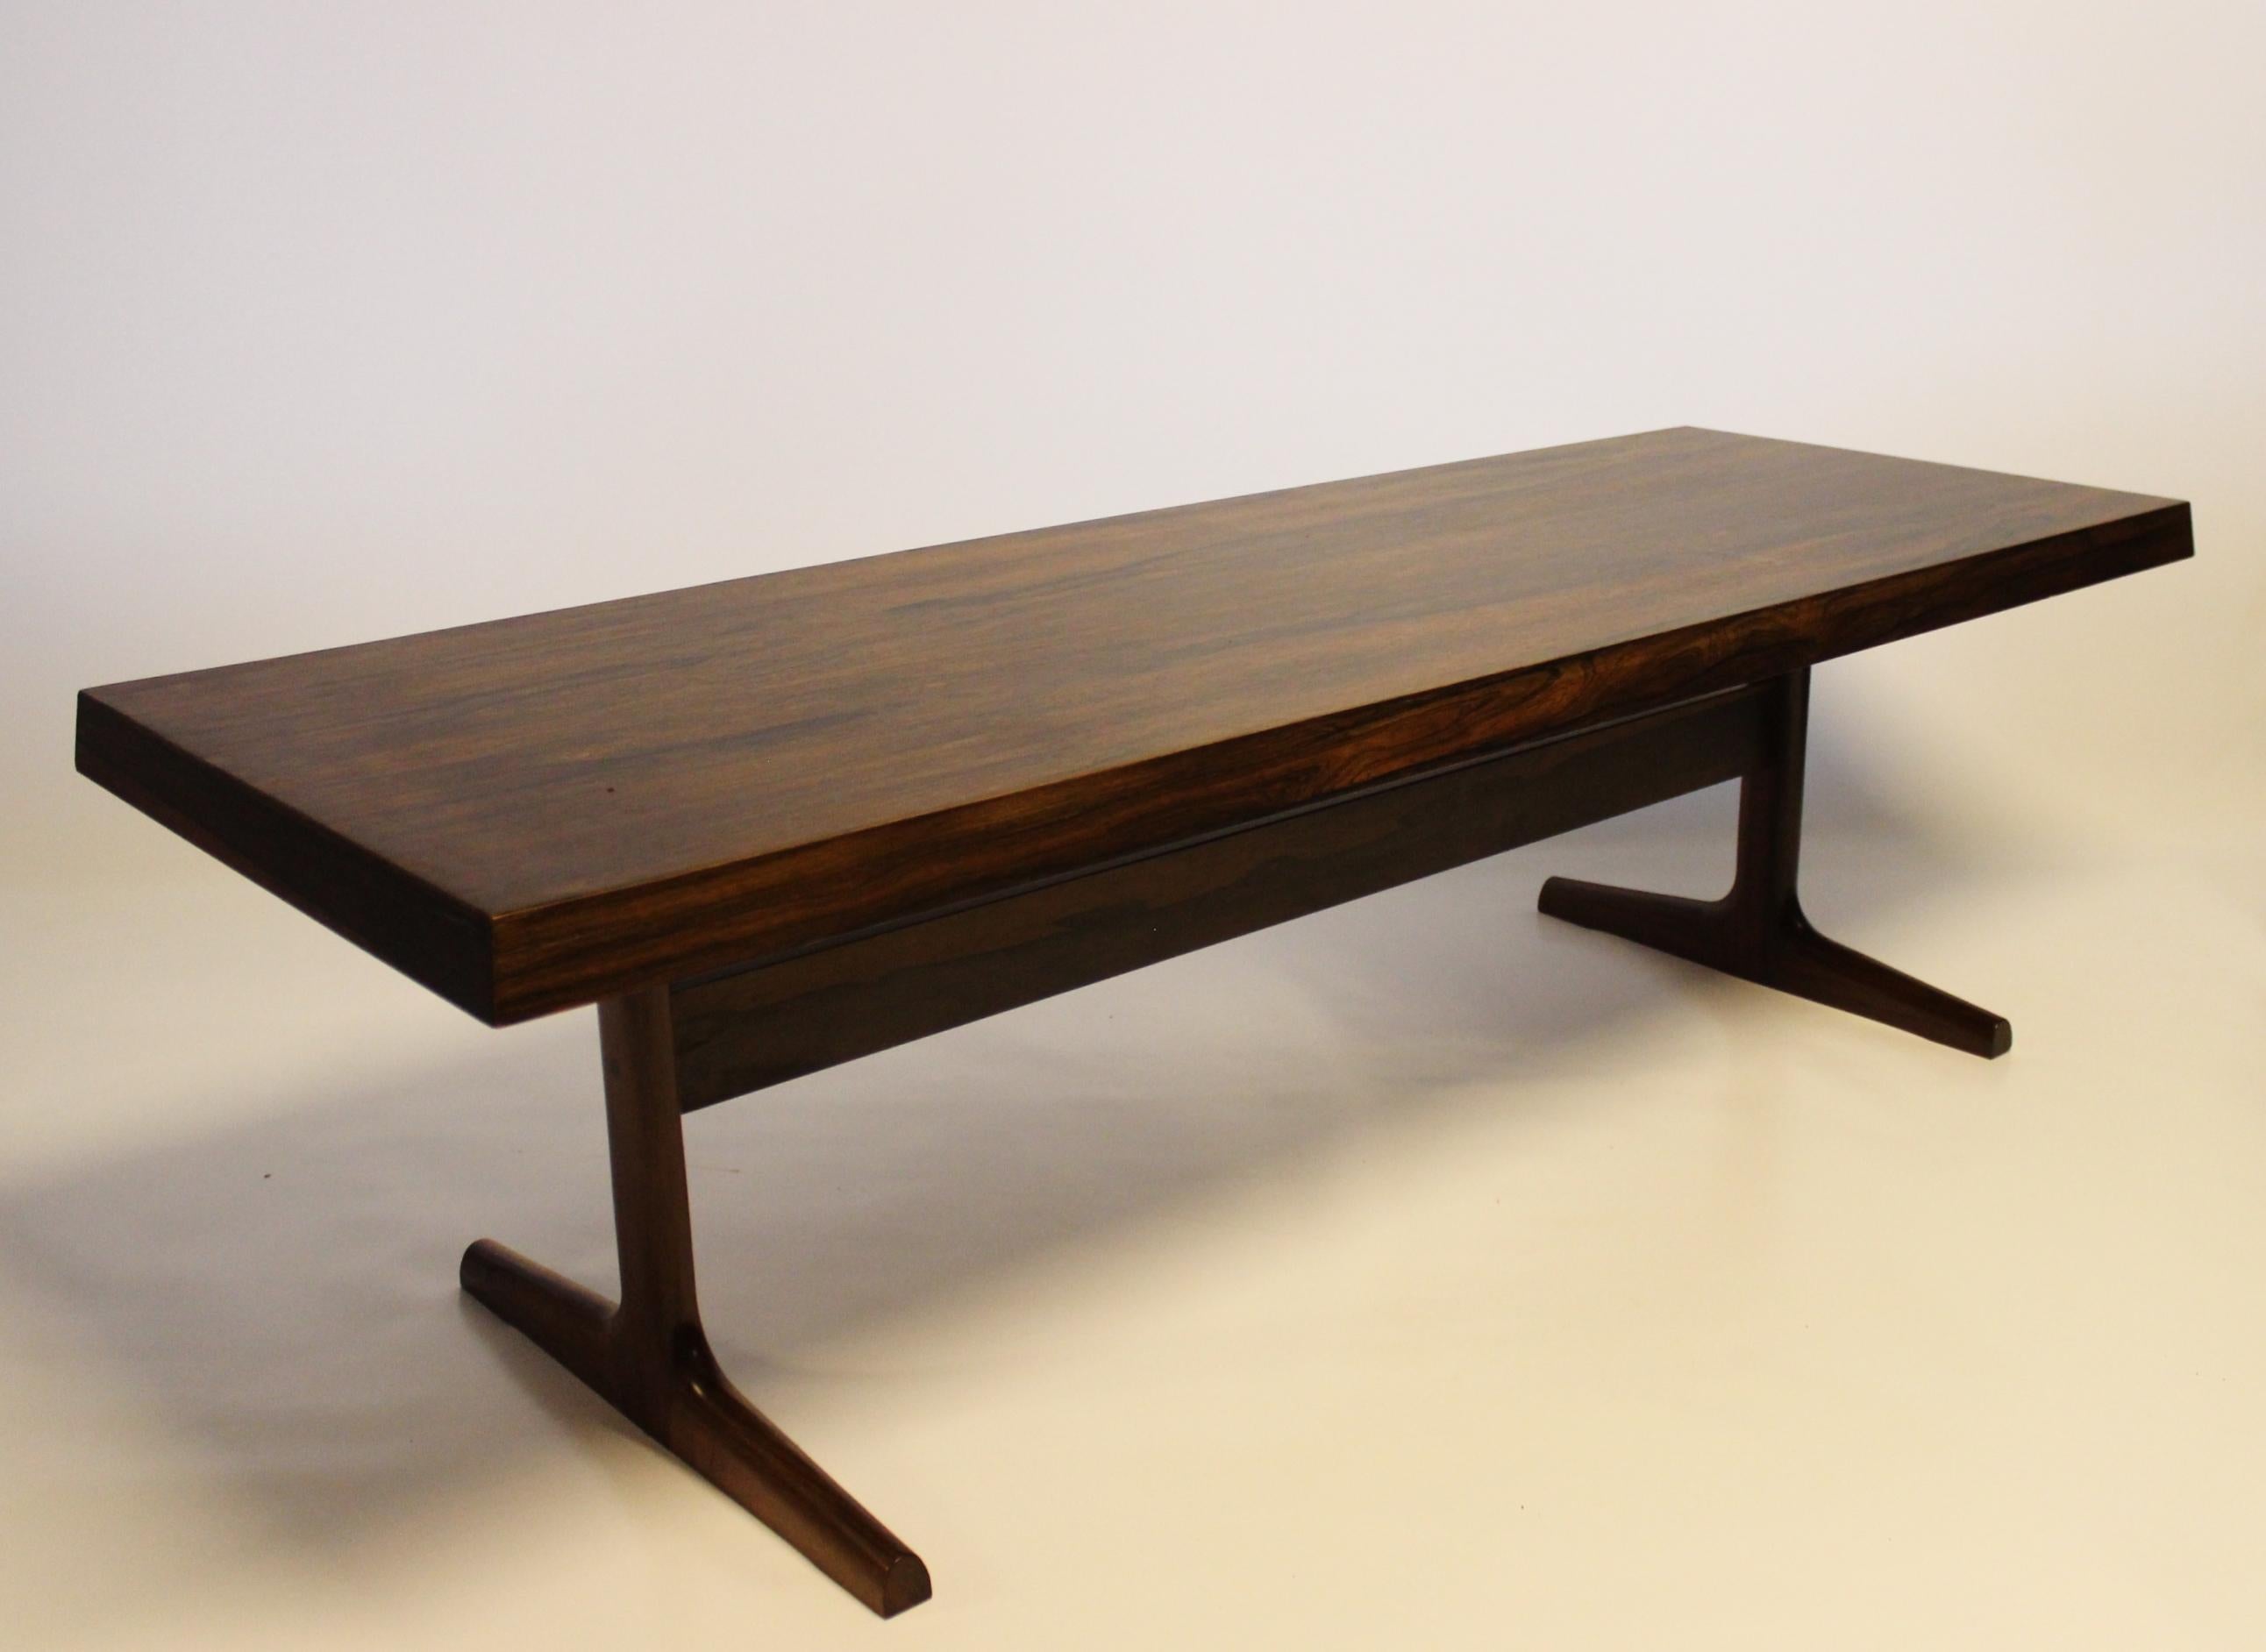 Cette table basse en bois de rose incarne l'élégance et le savoir-faire du design danois des années 1960. Fabriqué avec précision et souci du détail, il présente un attrait intemporel qui ajoute de la sophistication à tout espace de vie.

Les tons